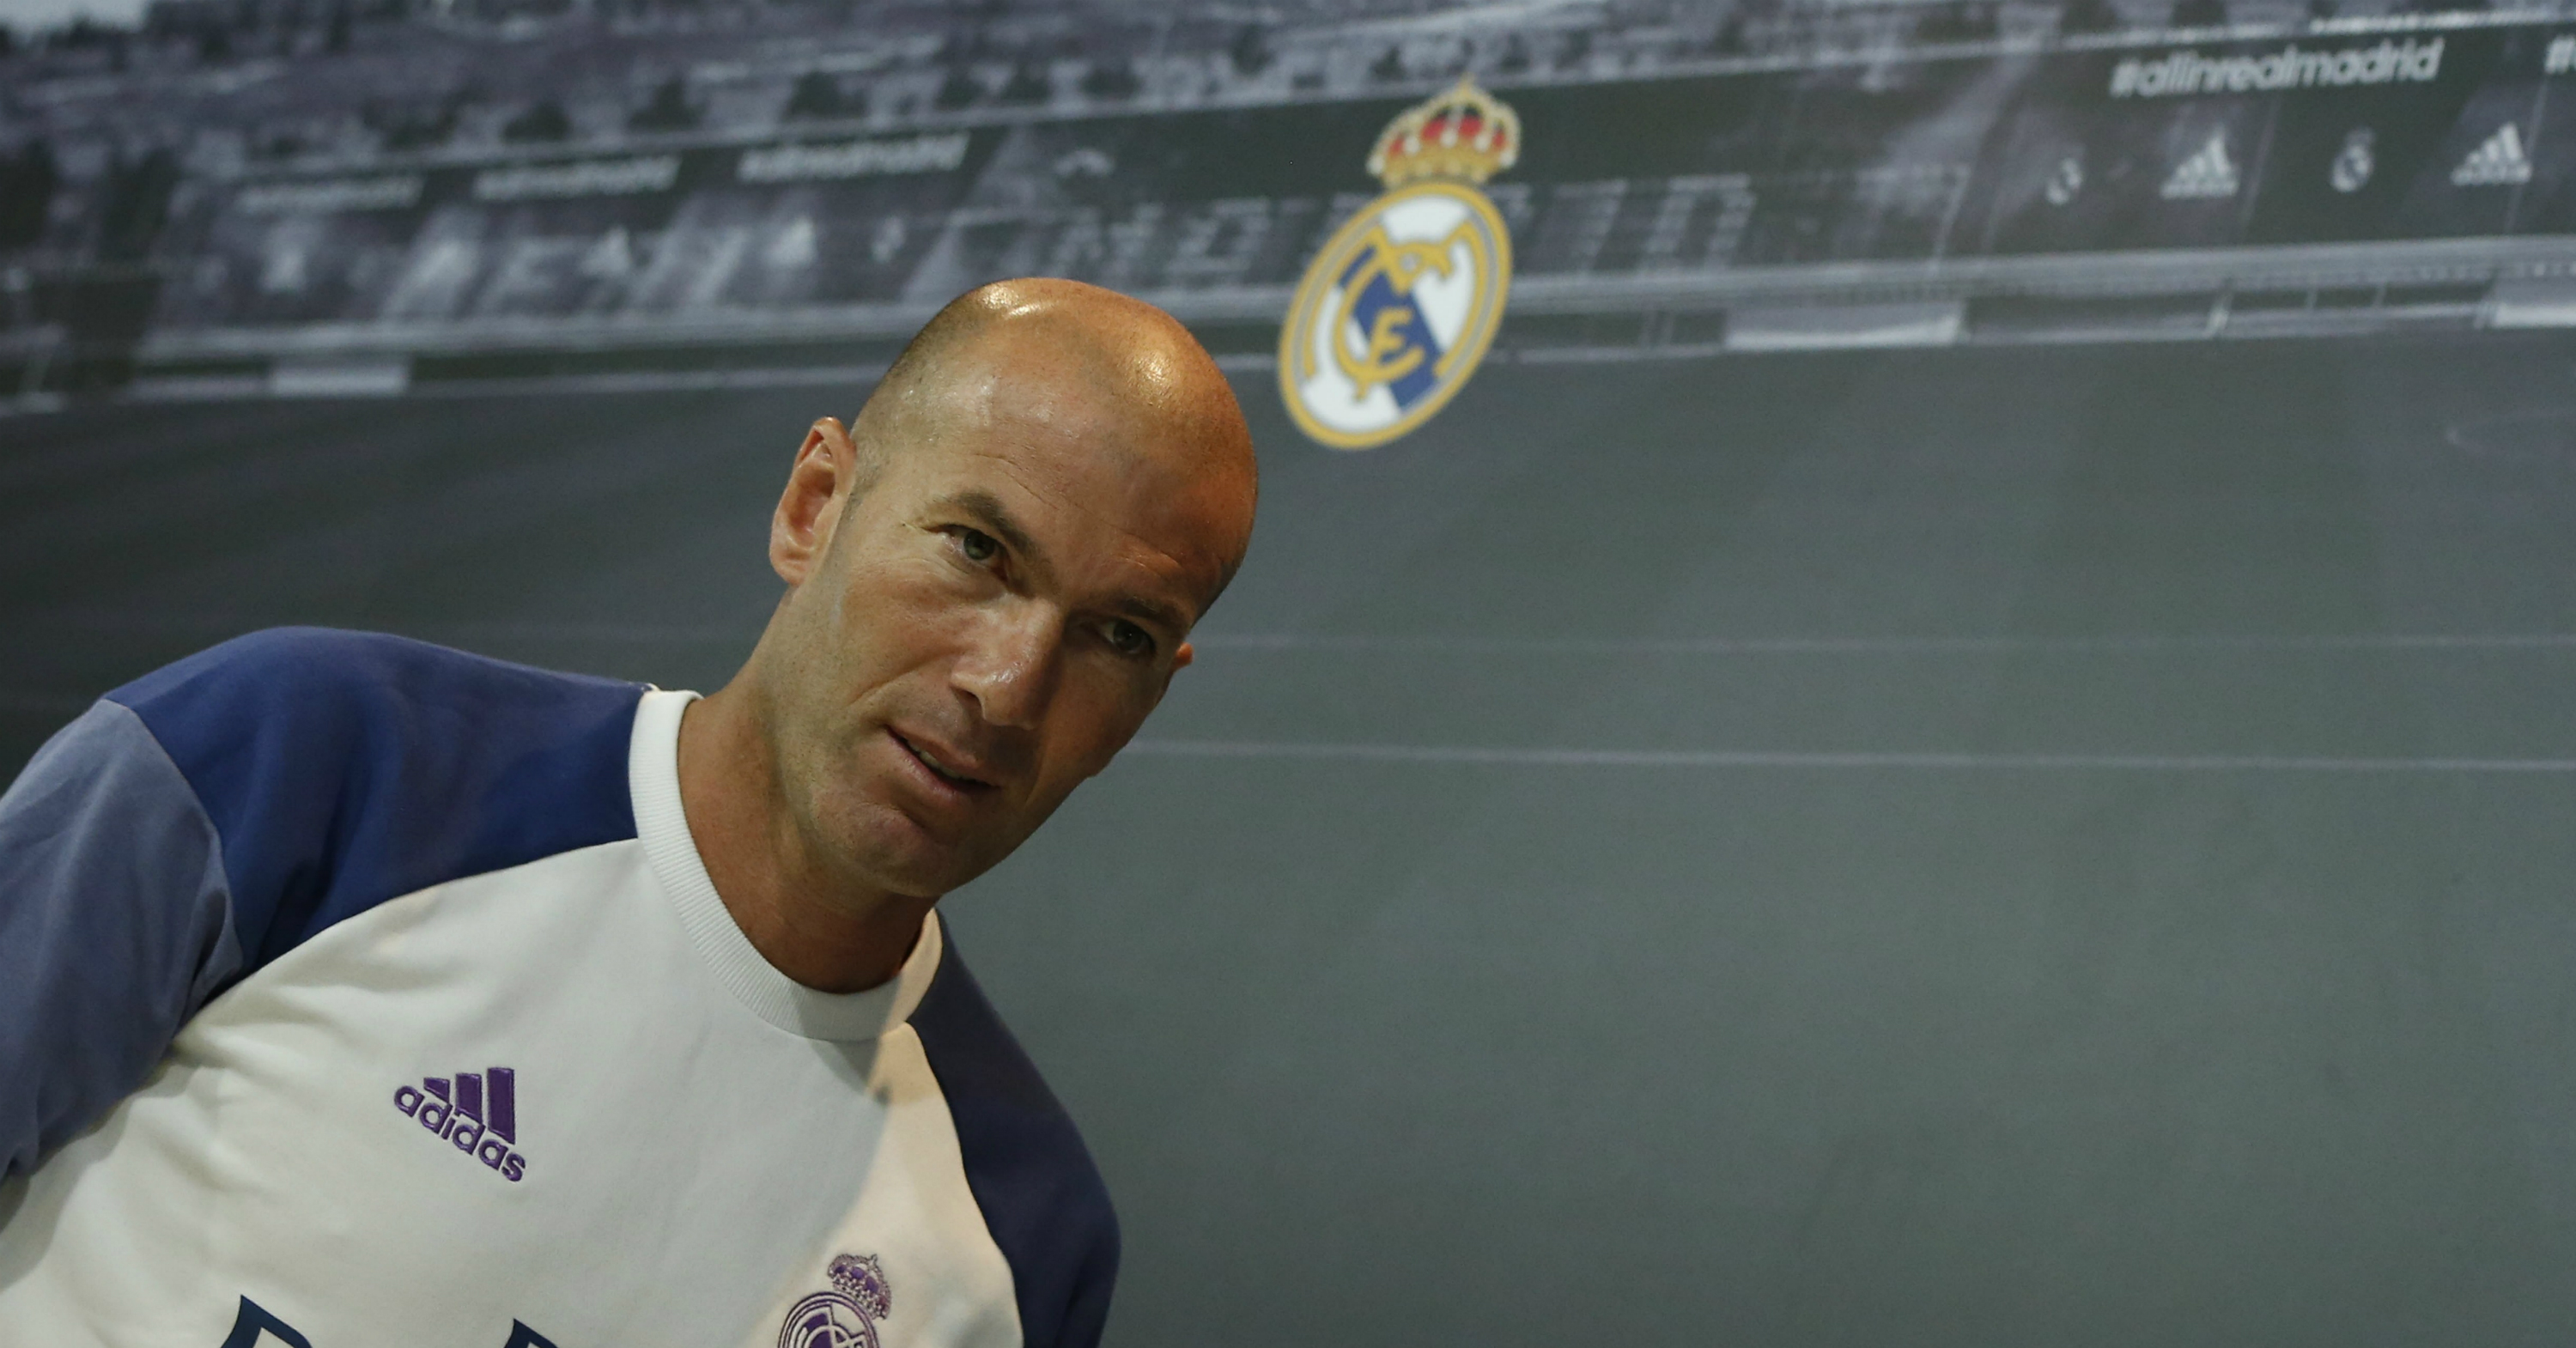 El entrenador del Real Madrid, Zinedine Zidane, uno de los mejor pagados del fútbol europeo.